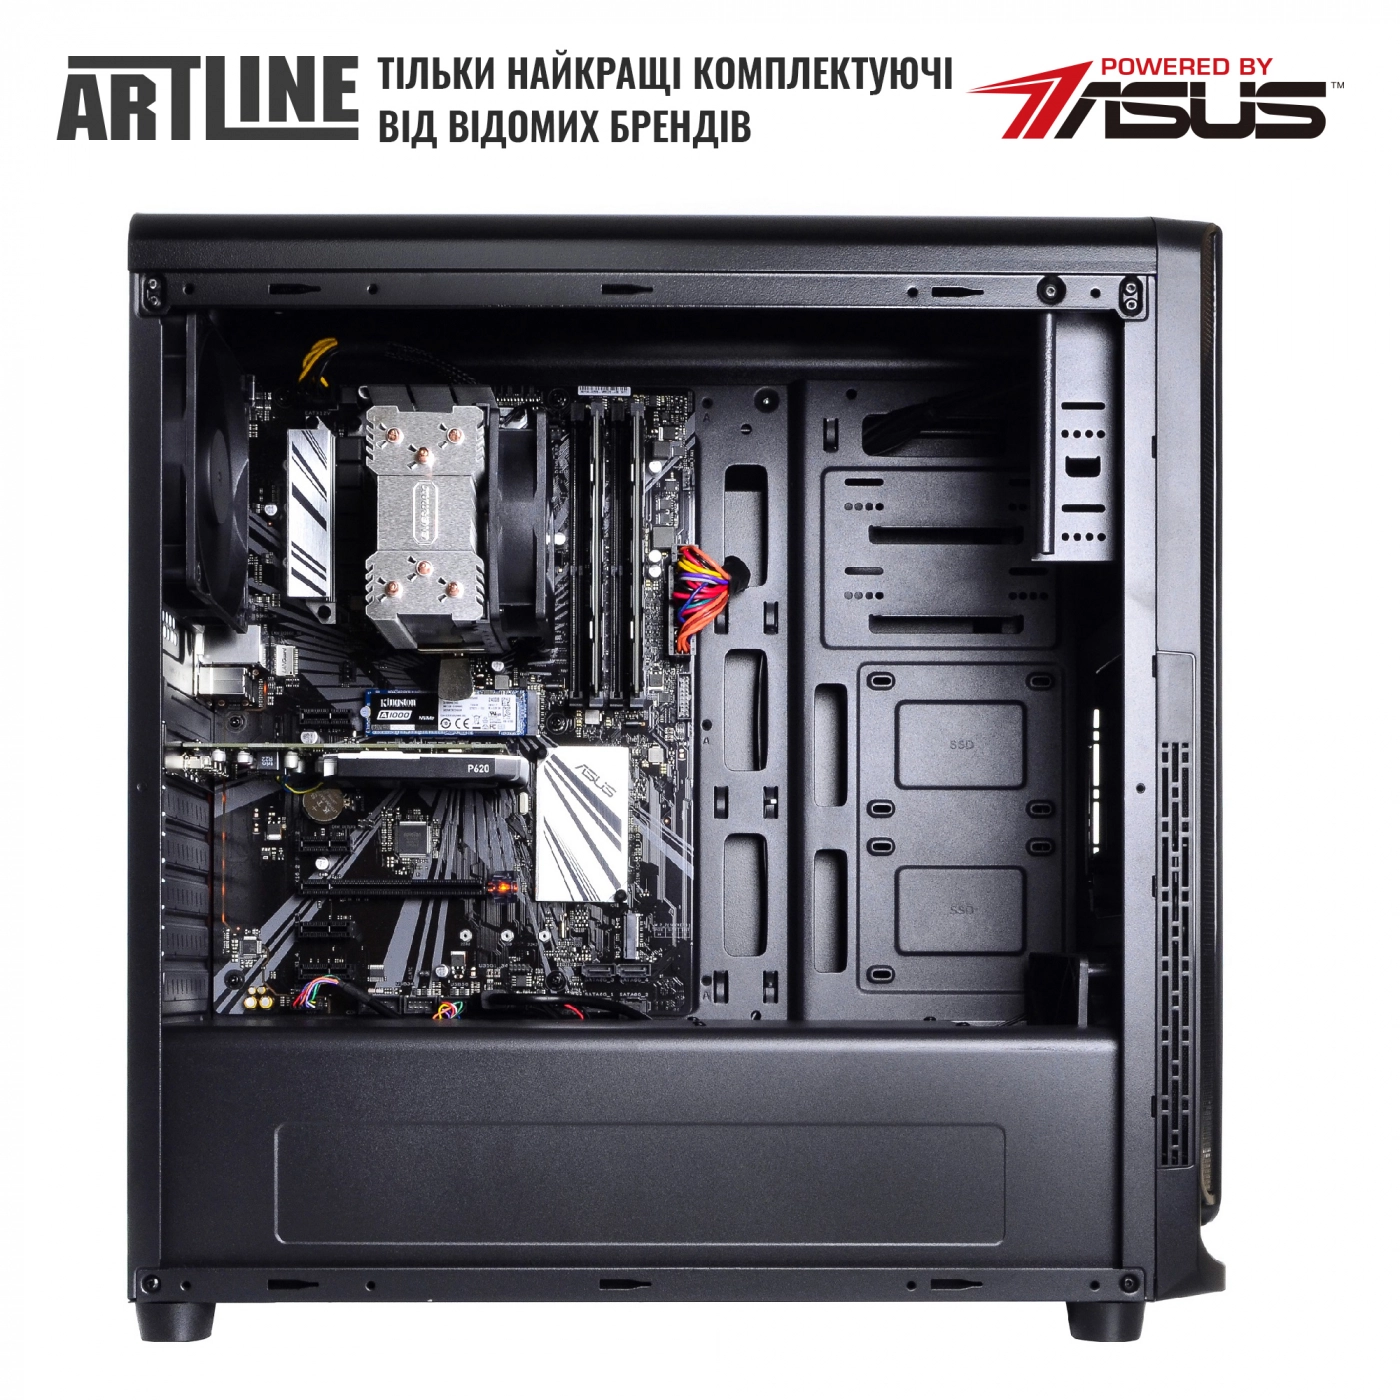 Купить Сервер ARTLINE Business T27v18 - фото 5